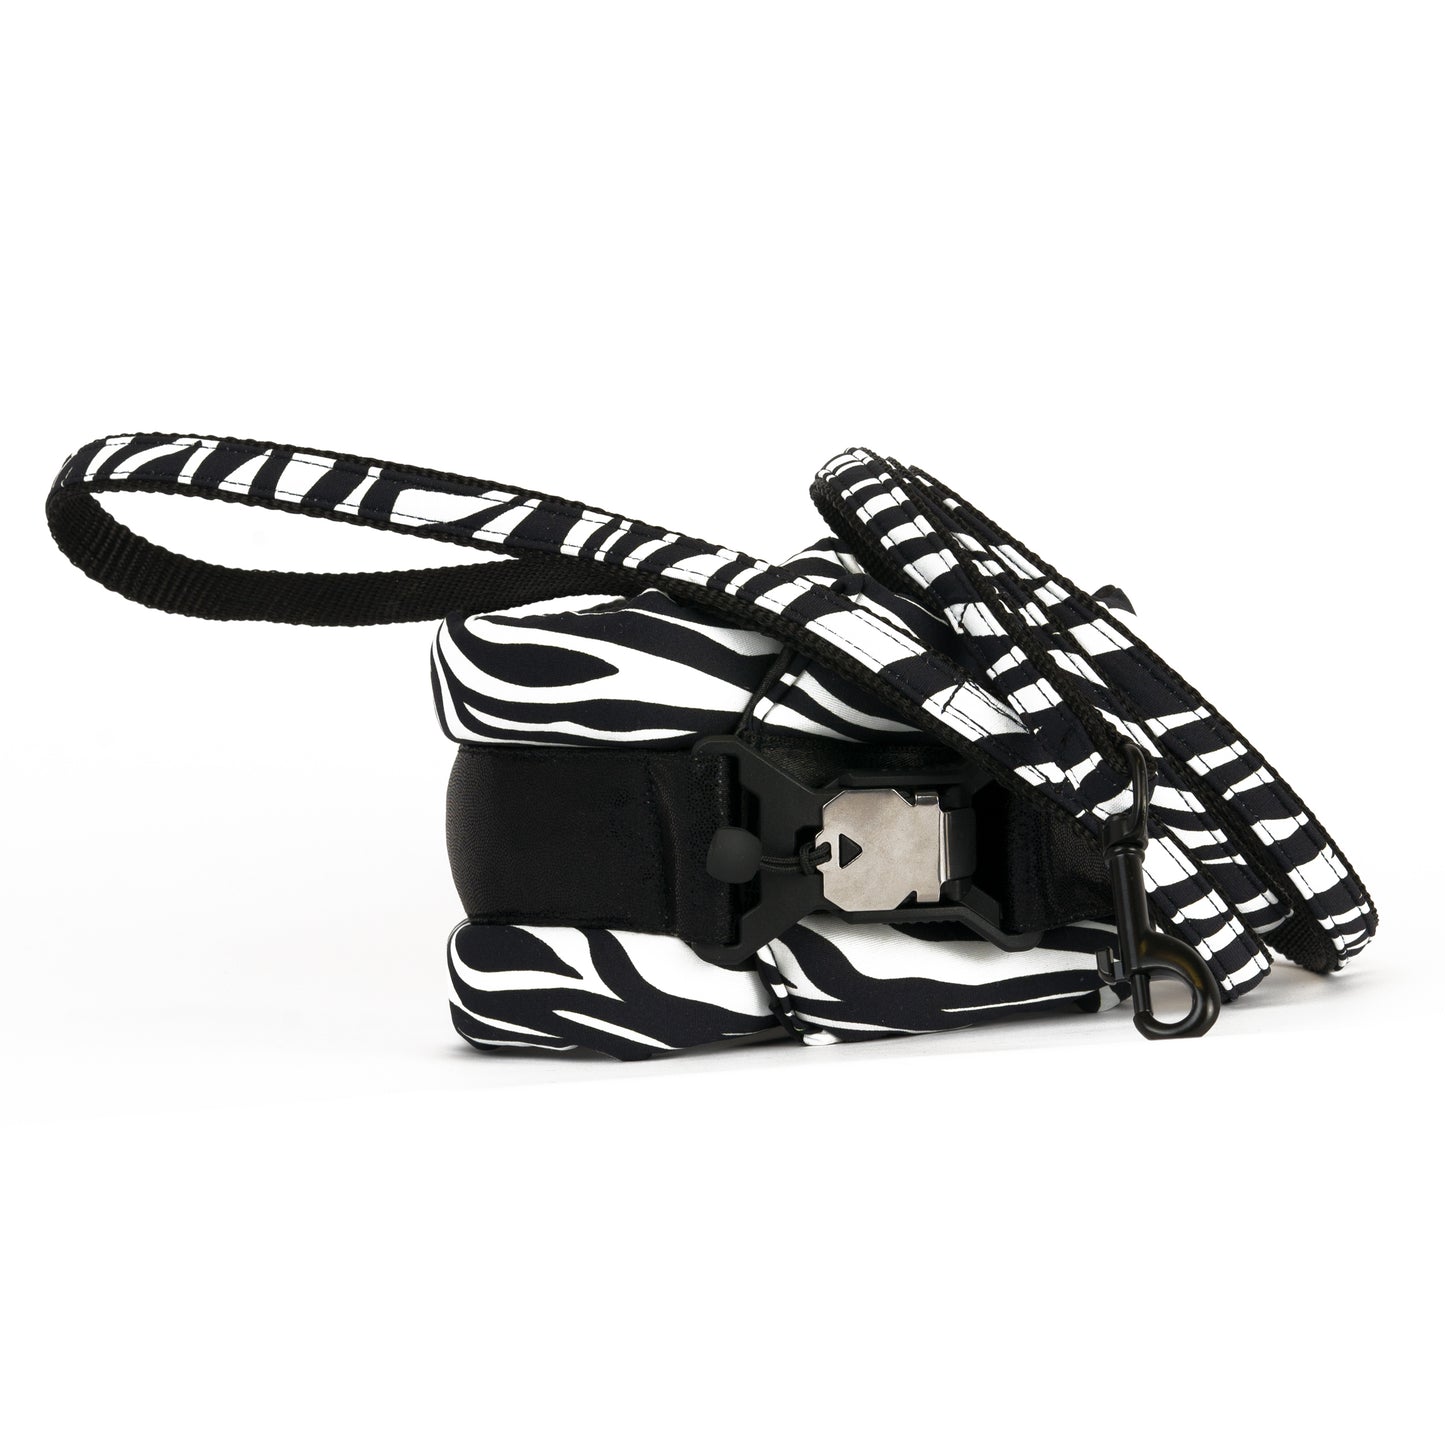 Standard Fluffy Magnetic Collar Black Zebra